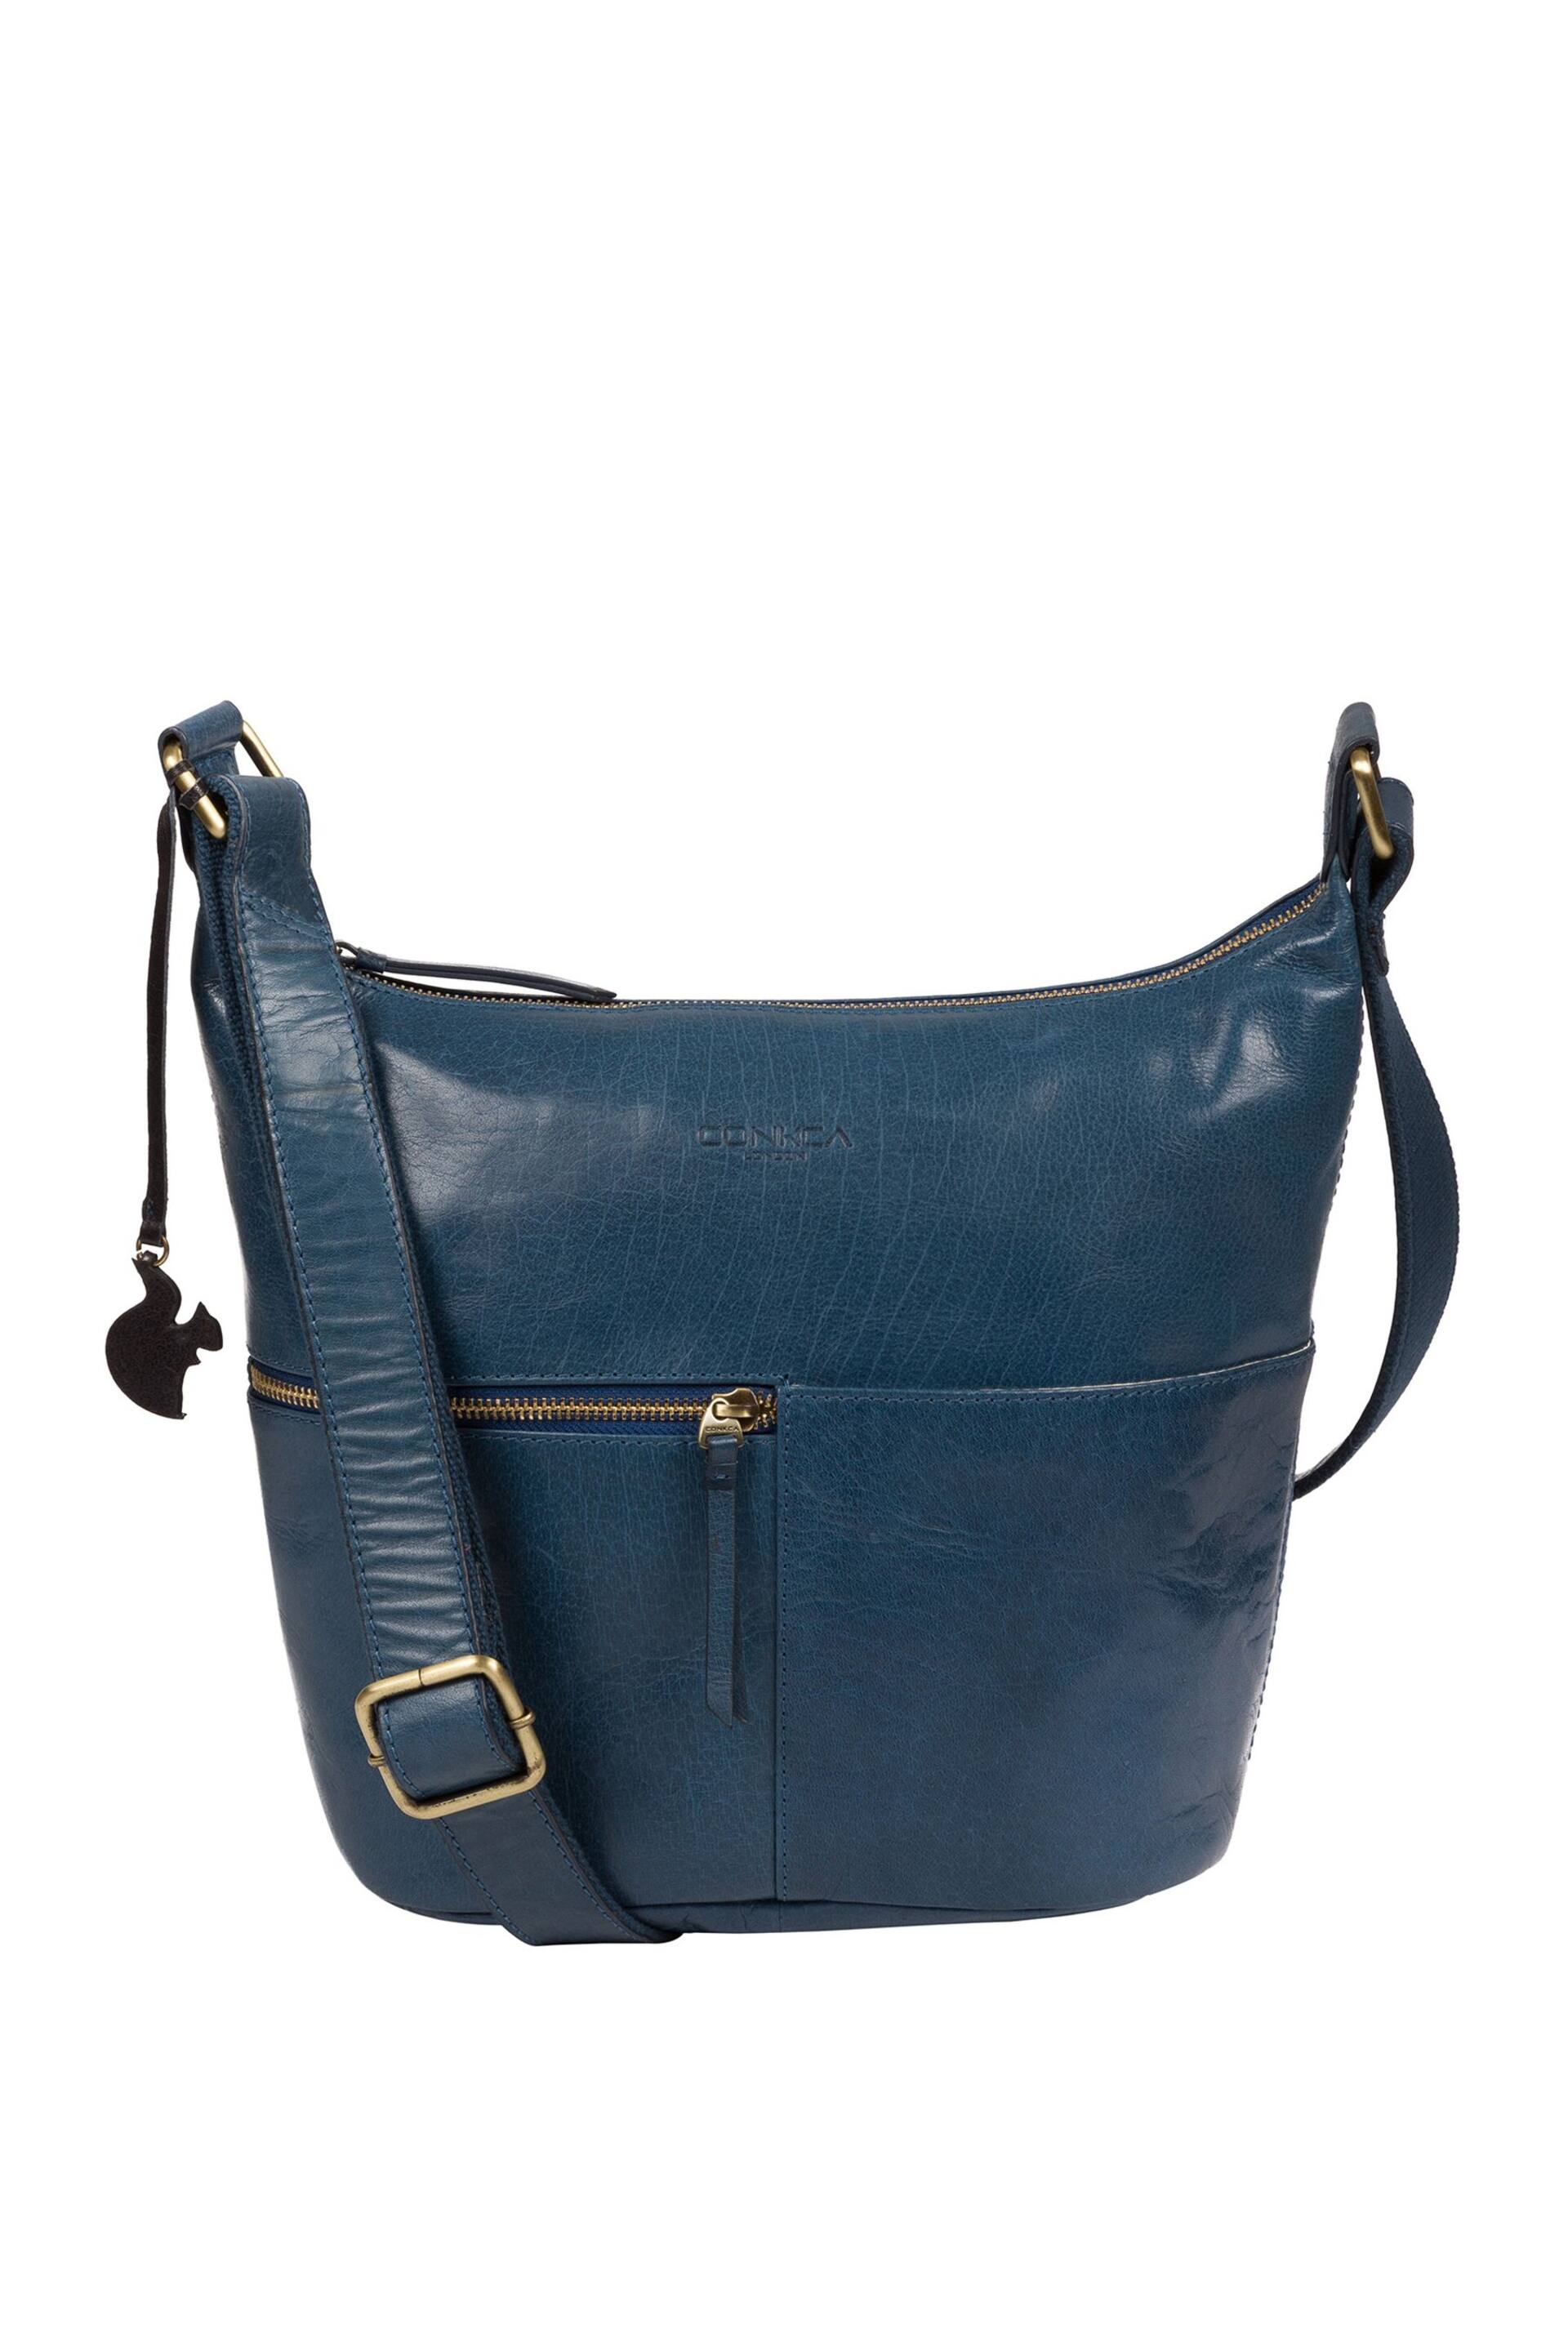 Conkca Kristin Leather Shoulder Bag - Image 1 of 7